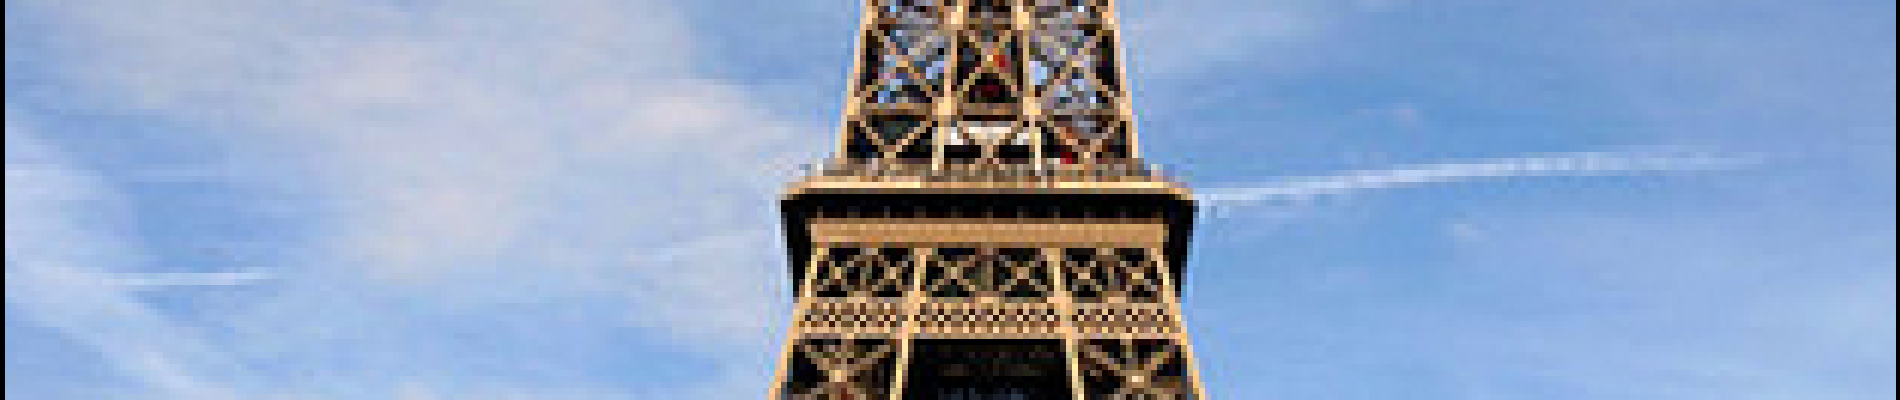 Point d'intérêt Paris - Tour Eiffel - Photo